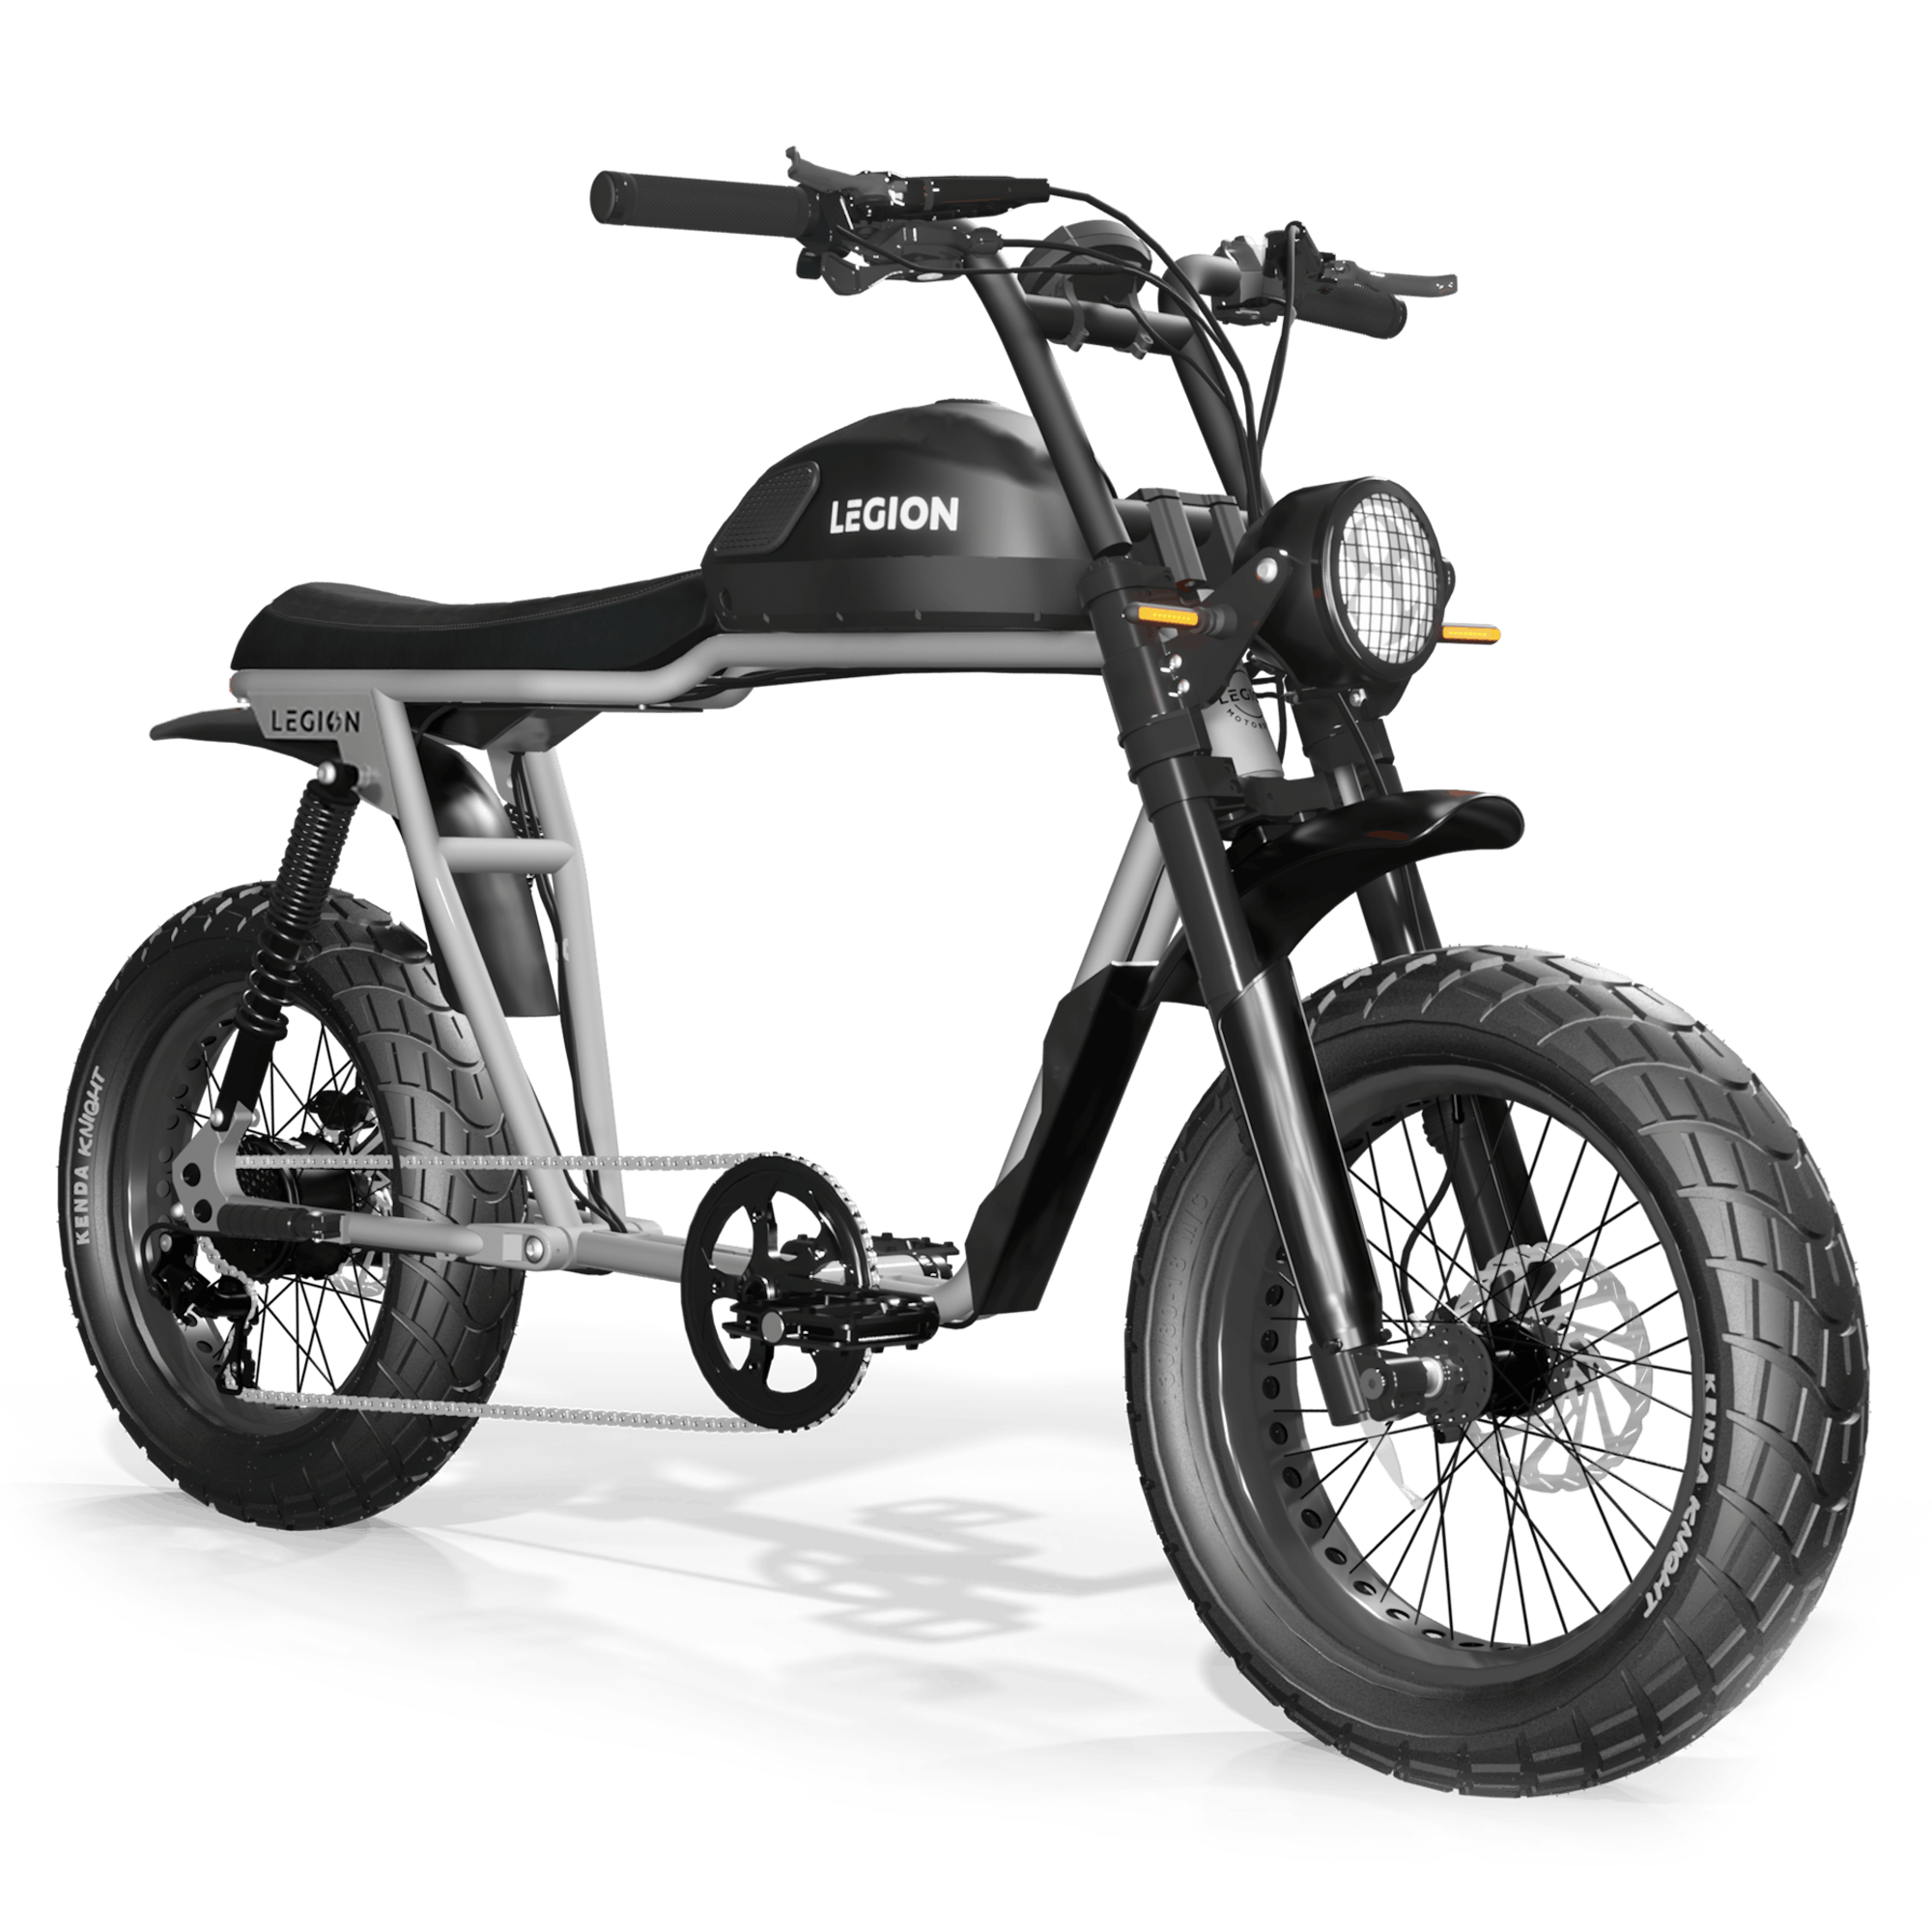 20 in. Off-Road Electric Bike 1200-Watt Powerful Motor 7 Speed Gears in  Black